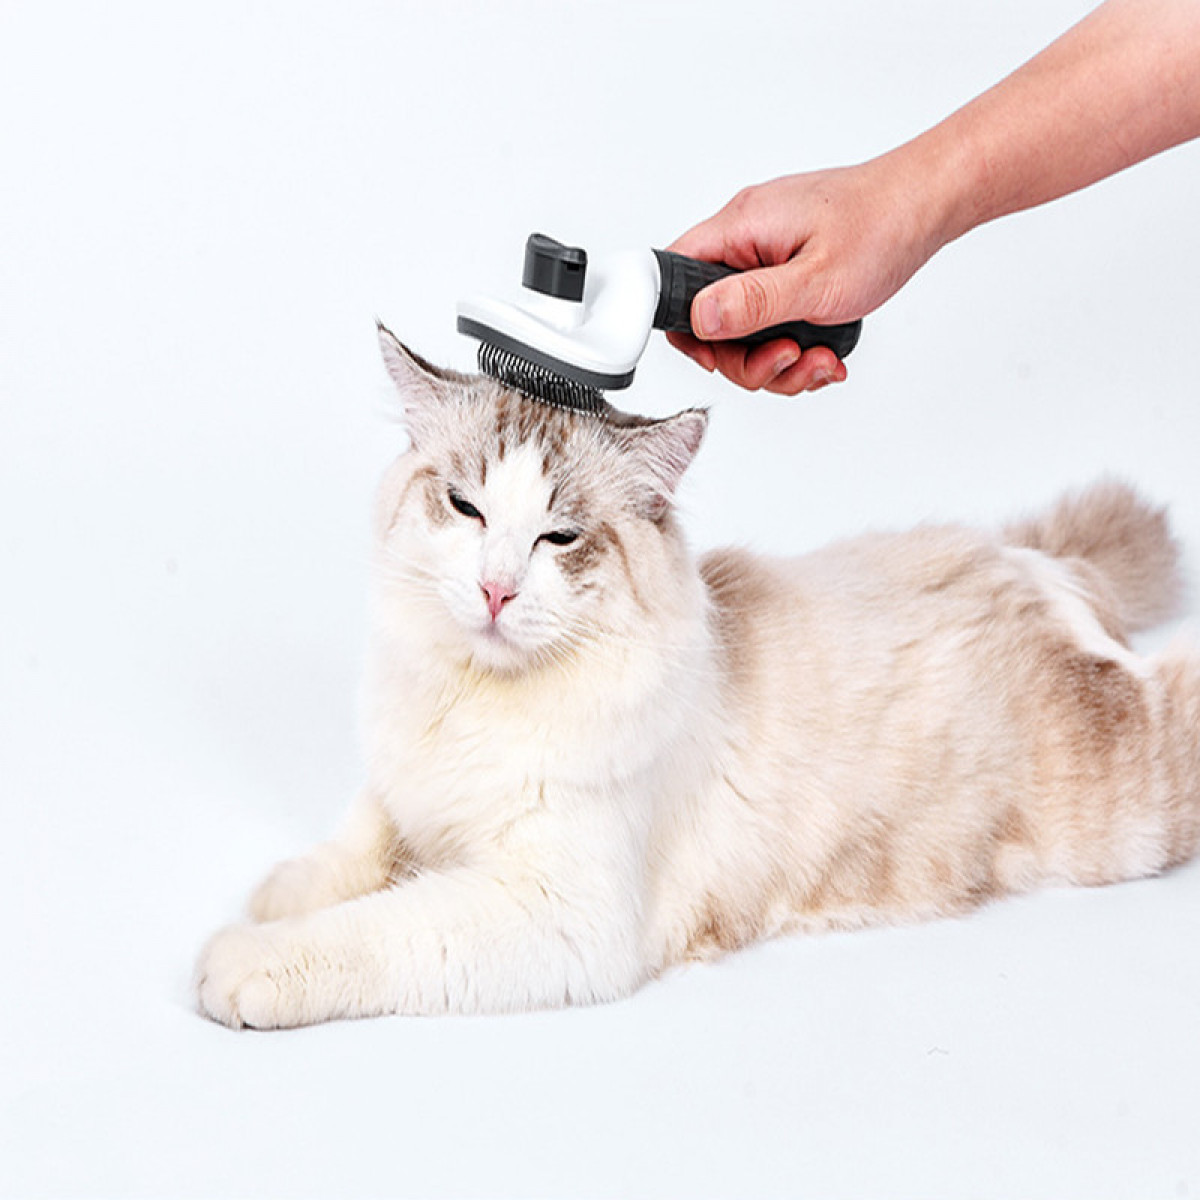 Needle und Häuten Katzenbürste Pflegen INF Grey atzenbürste zum Thin